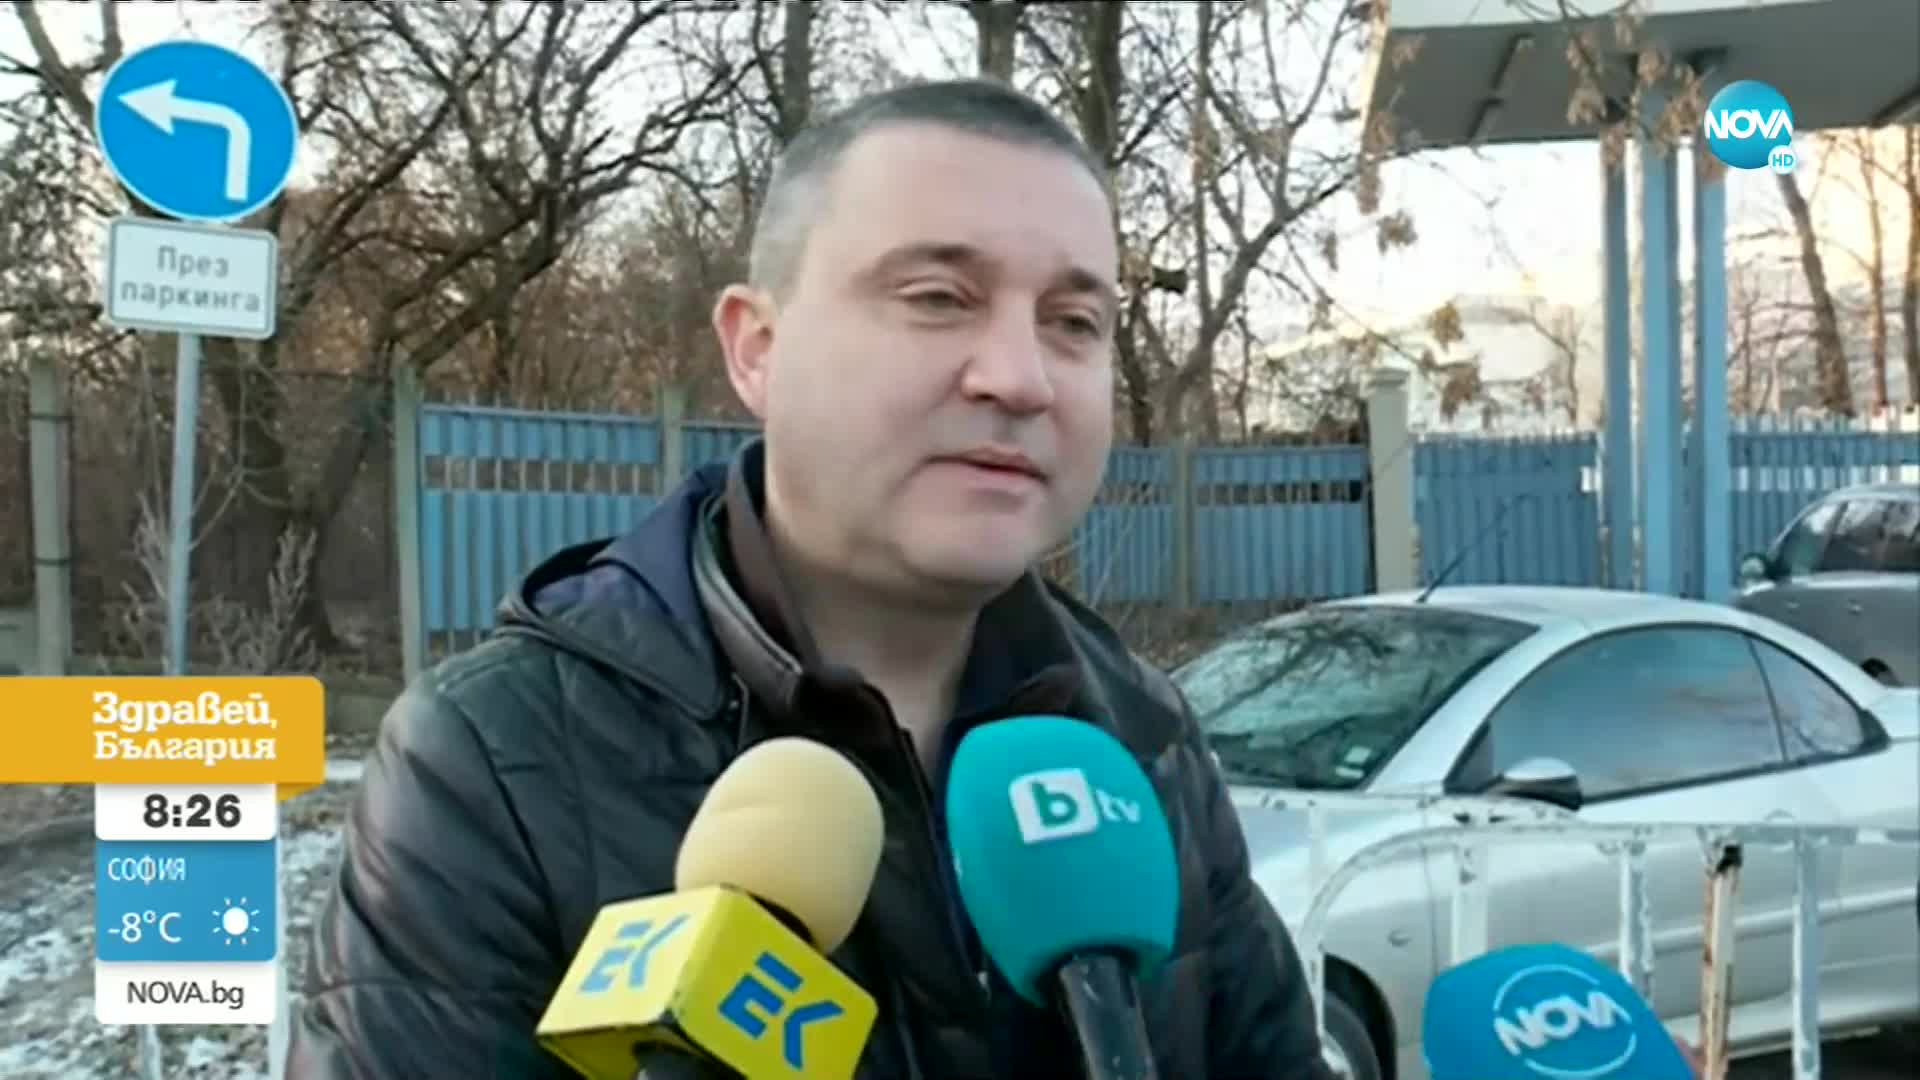 СЛЕД СКАНДАЛА С ДЖИПА: Владислав Горанов отново на разпит